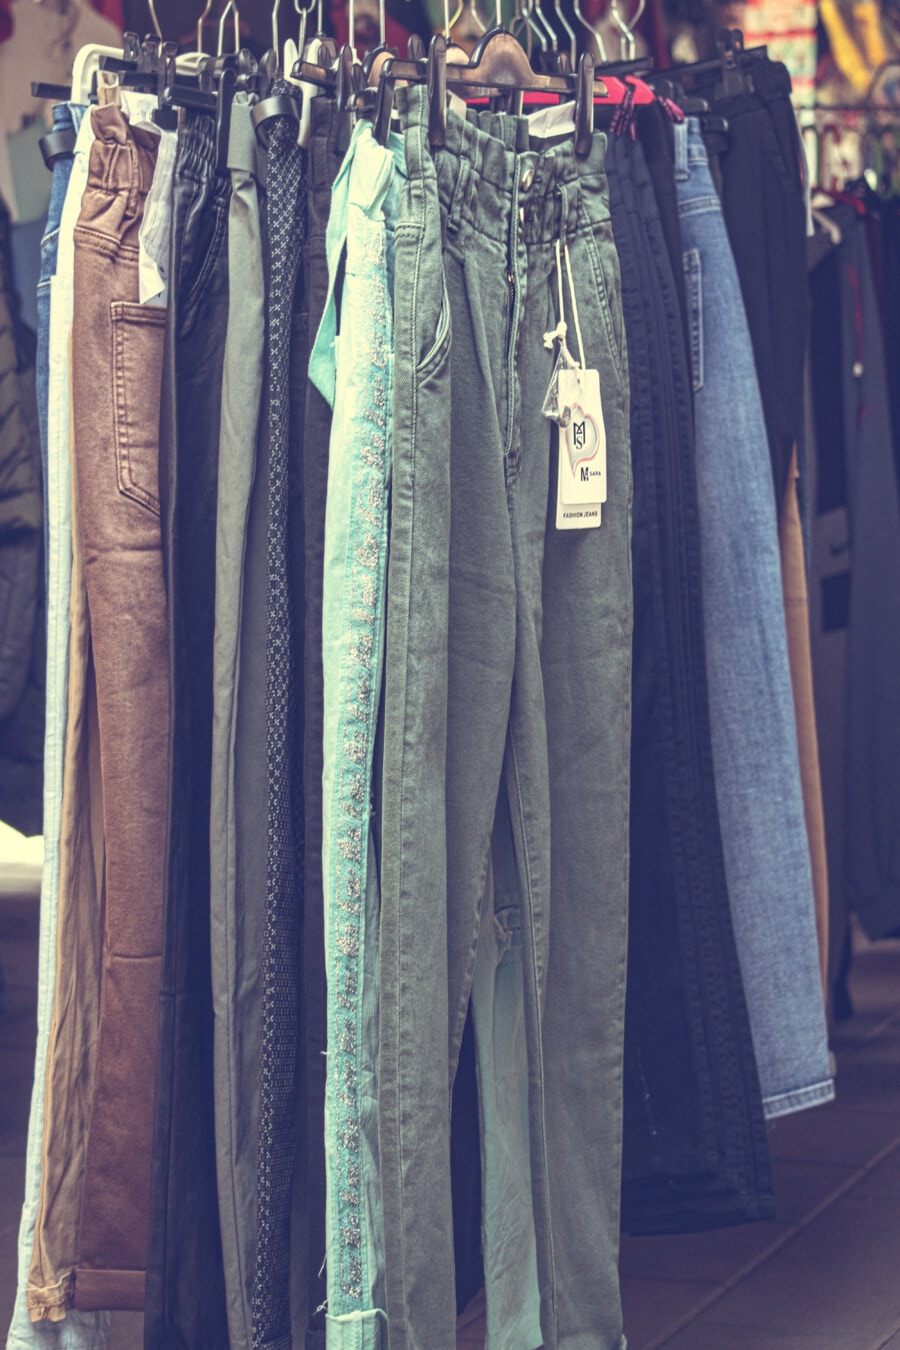 trouser, pants, shopping, shop, textile, denim, boutique, stock, wardrobe, hanger